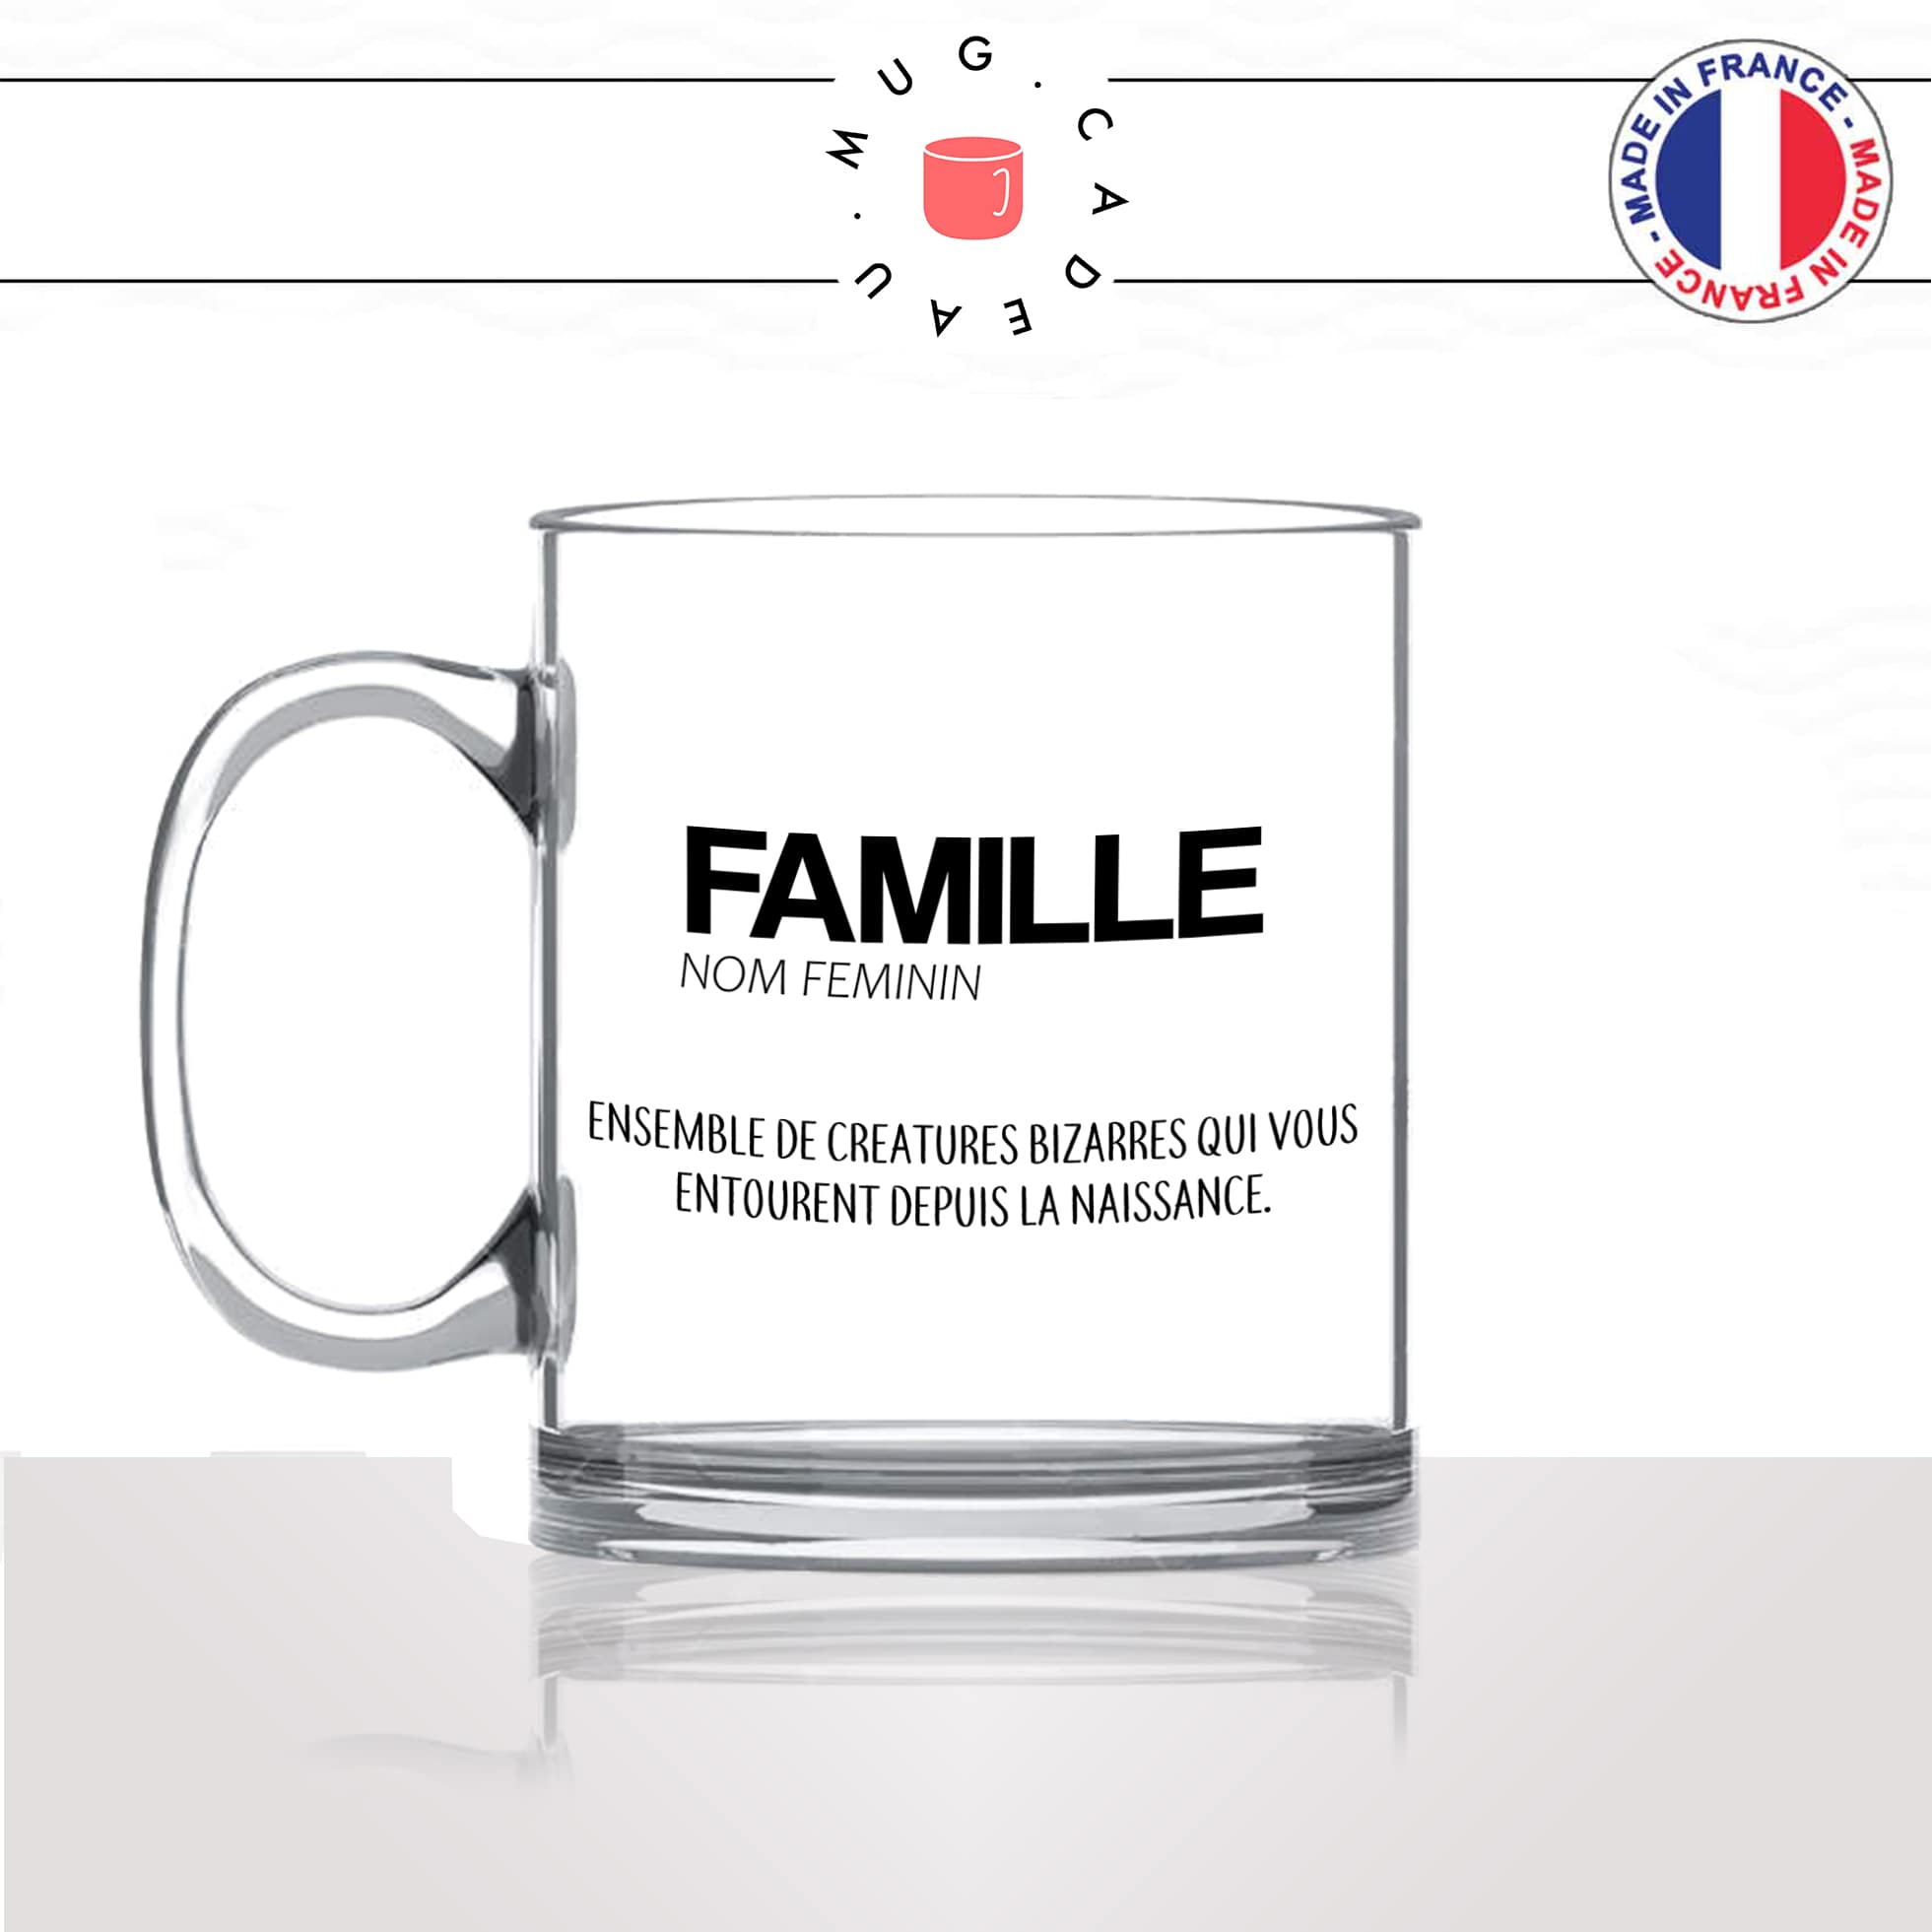 mug-tasse-en-verre-transparent-glass-famille-definition-enfant-parents-frere-soeur-maison-decoration-humour-idée-cadeau-fun-cool-café-thé-original-min